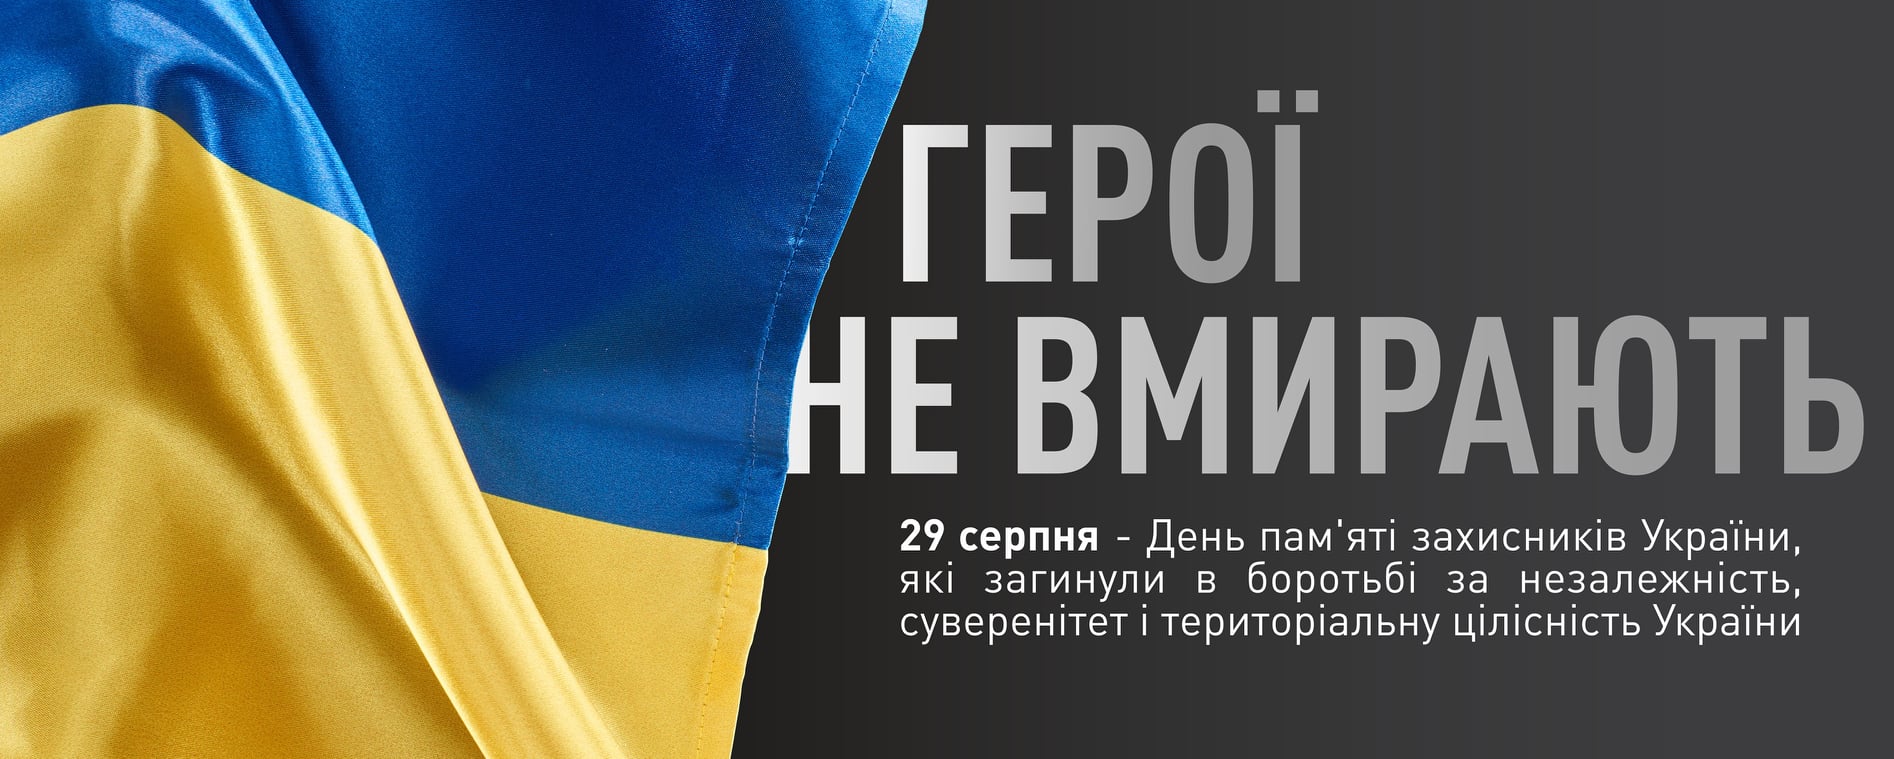 29 серпня – День пам’яті захисників України, Які загинули в боротьбі за незалежність, суверенітет і територіальну цілісність України